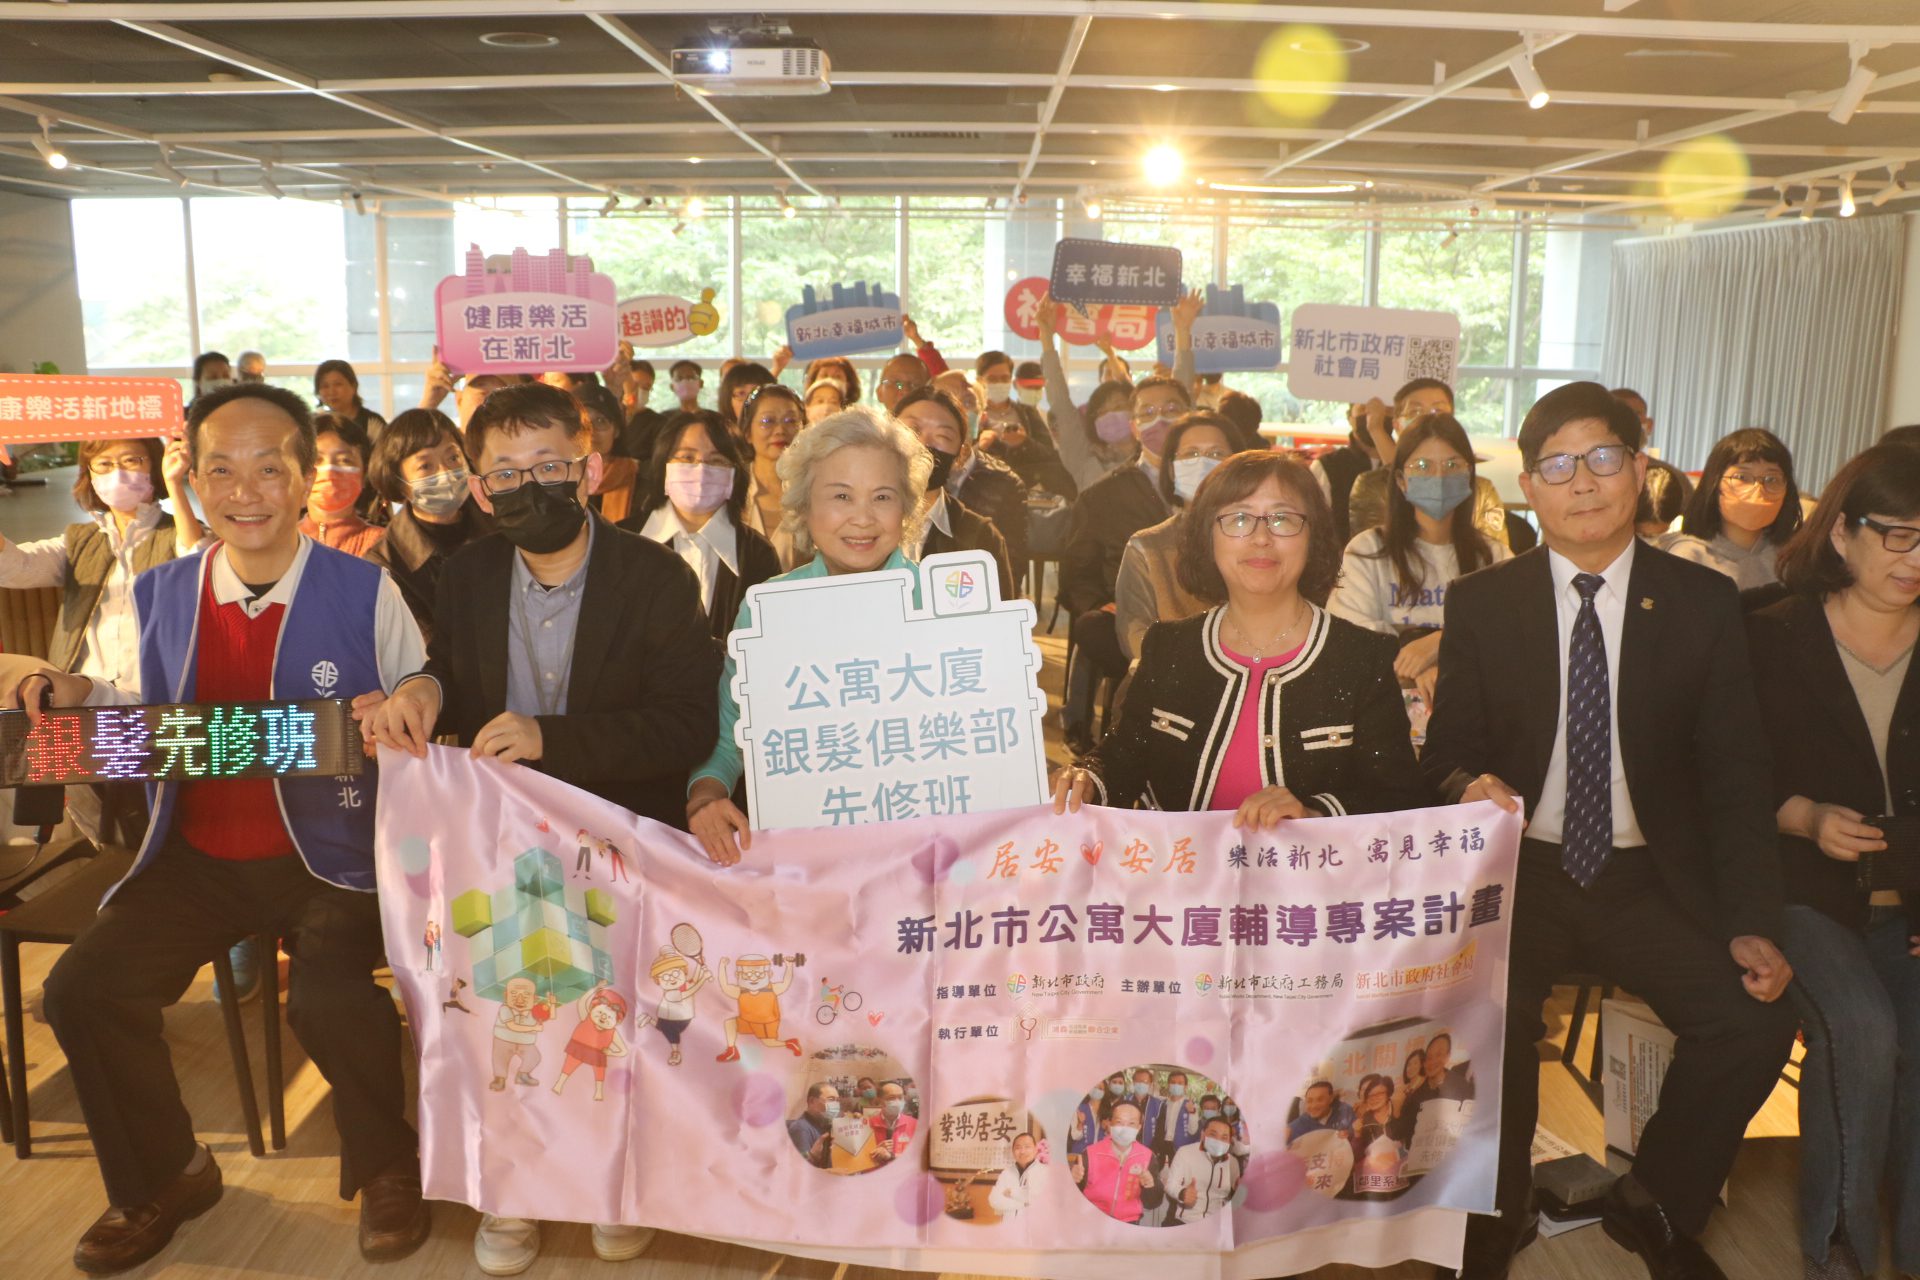 住大樓對面不相識 活動來拉近 新北推銀髮先修班 要社區動起來 - 早安台灣新聞 | Morning Taiwan News